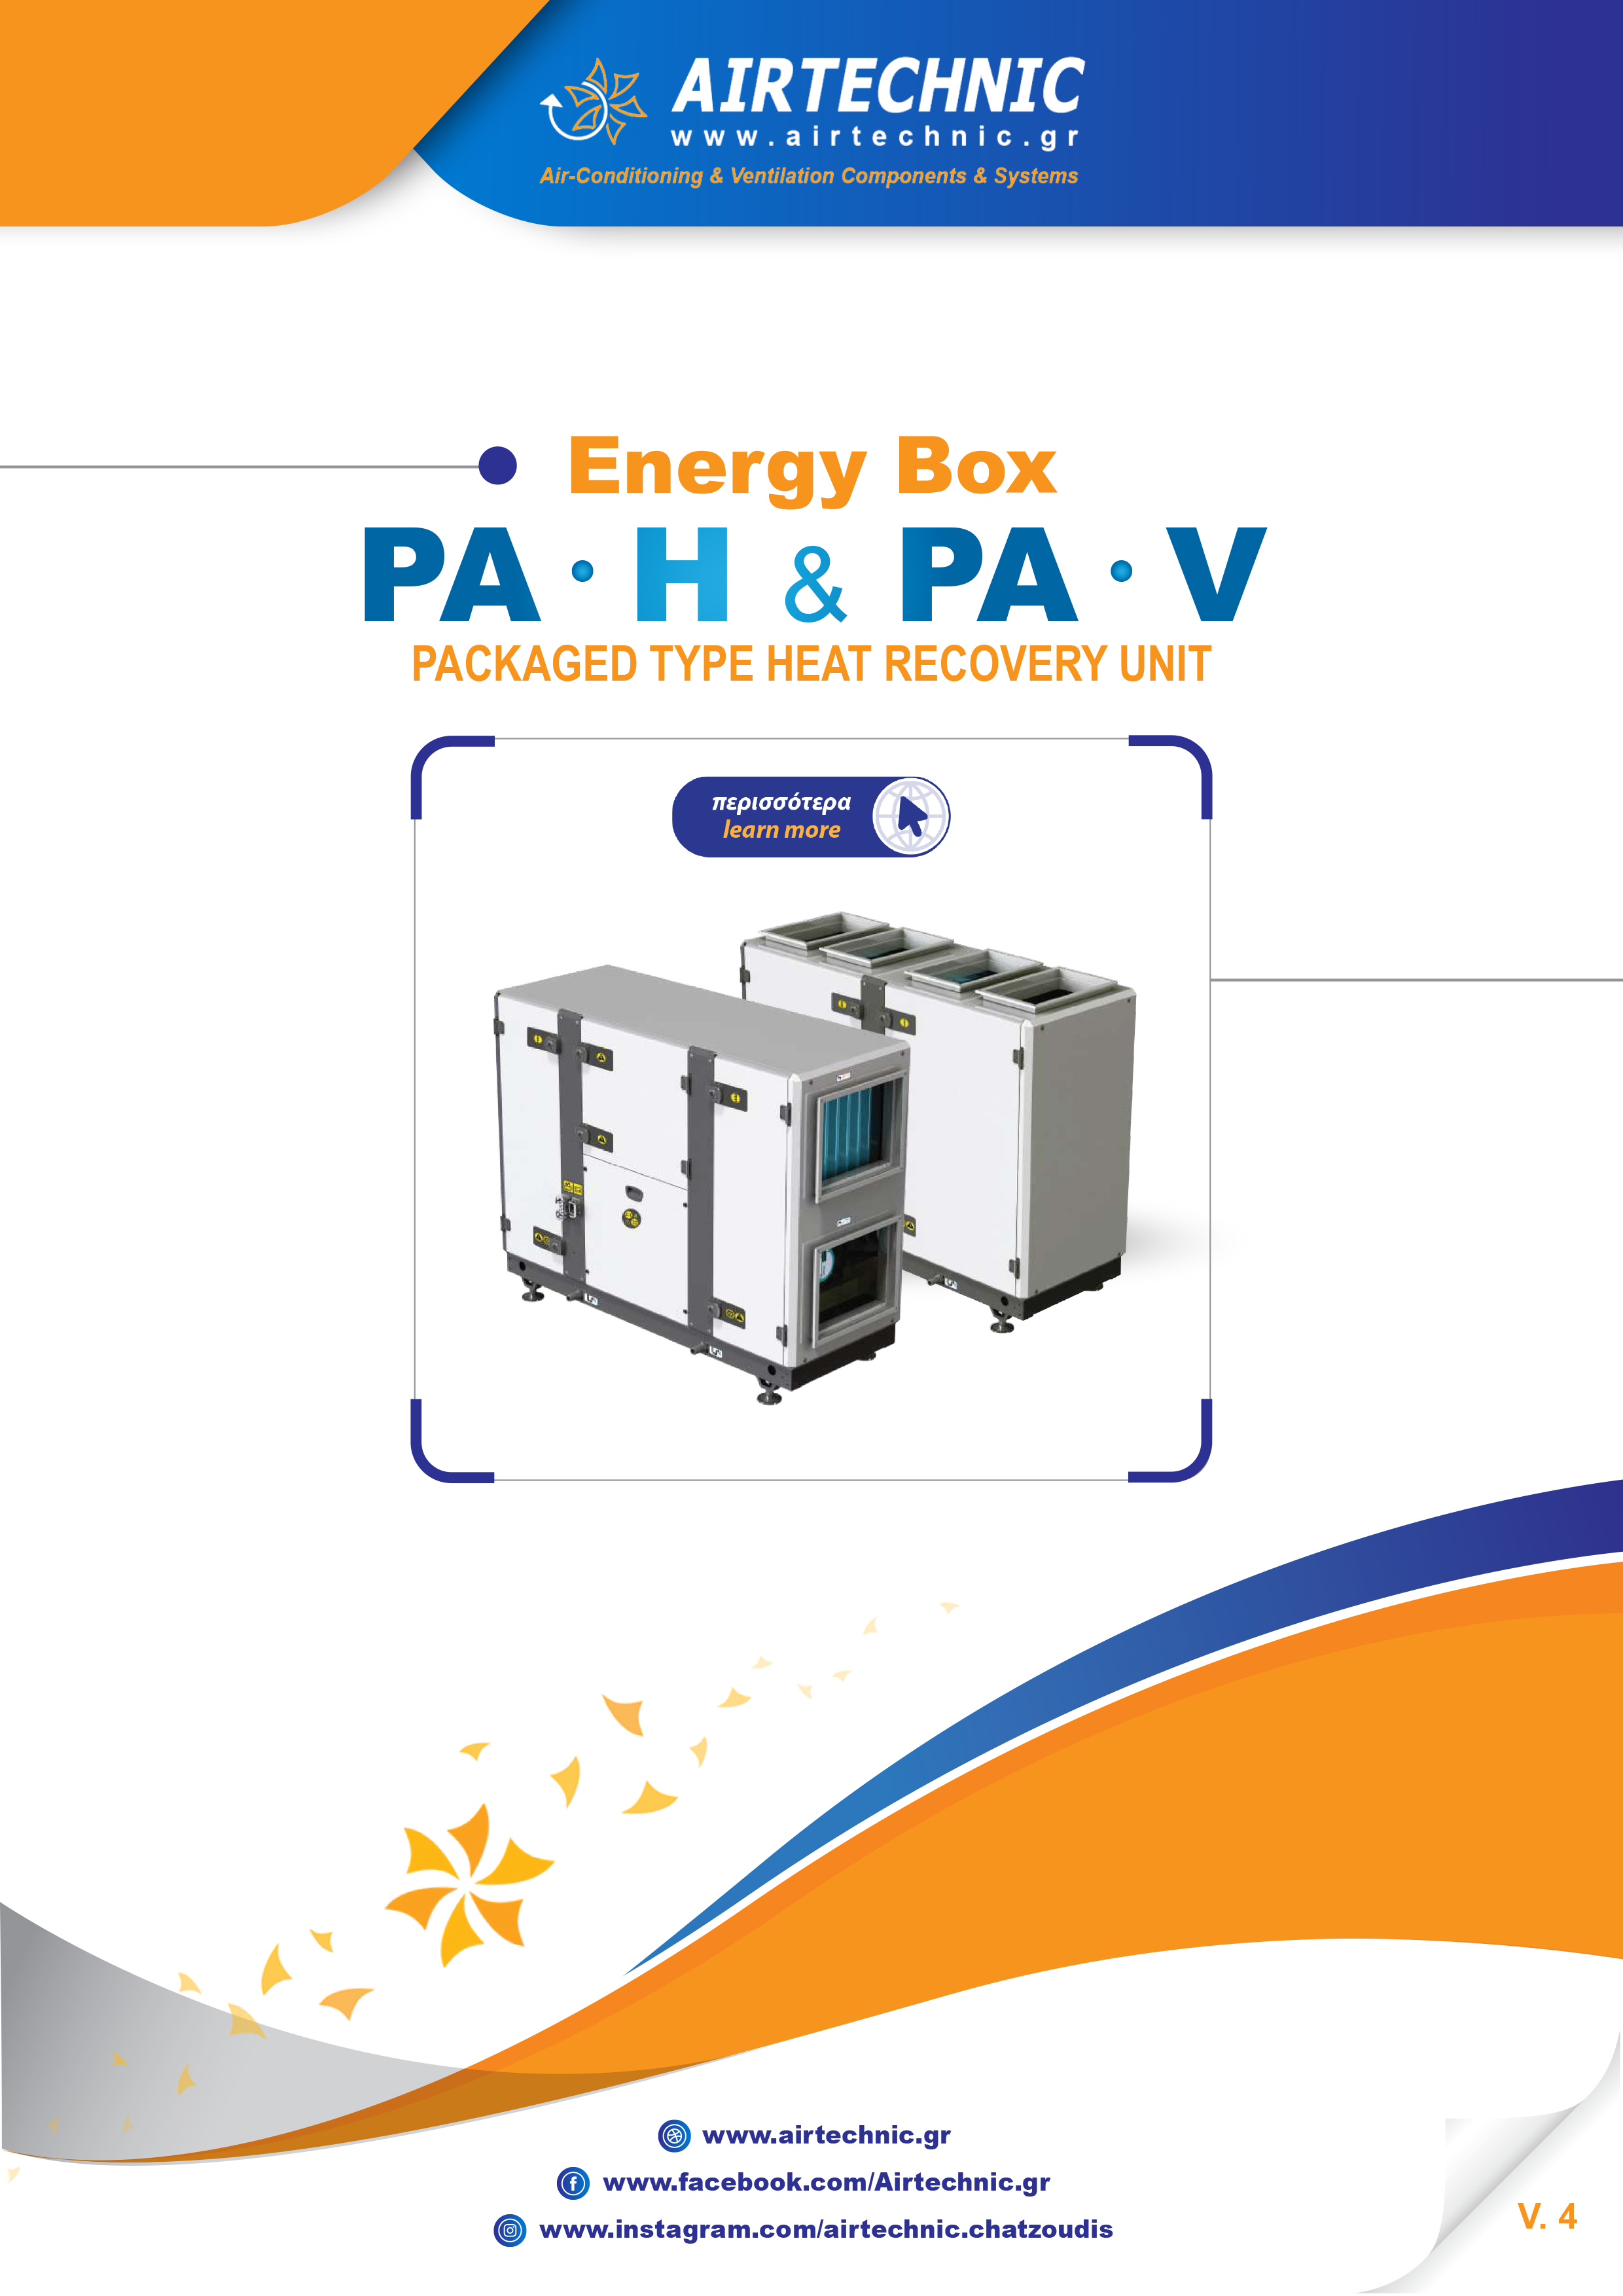 ΕΝΤΥΠΟ "ENERGY BOX PA-H / PA-V"